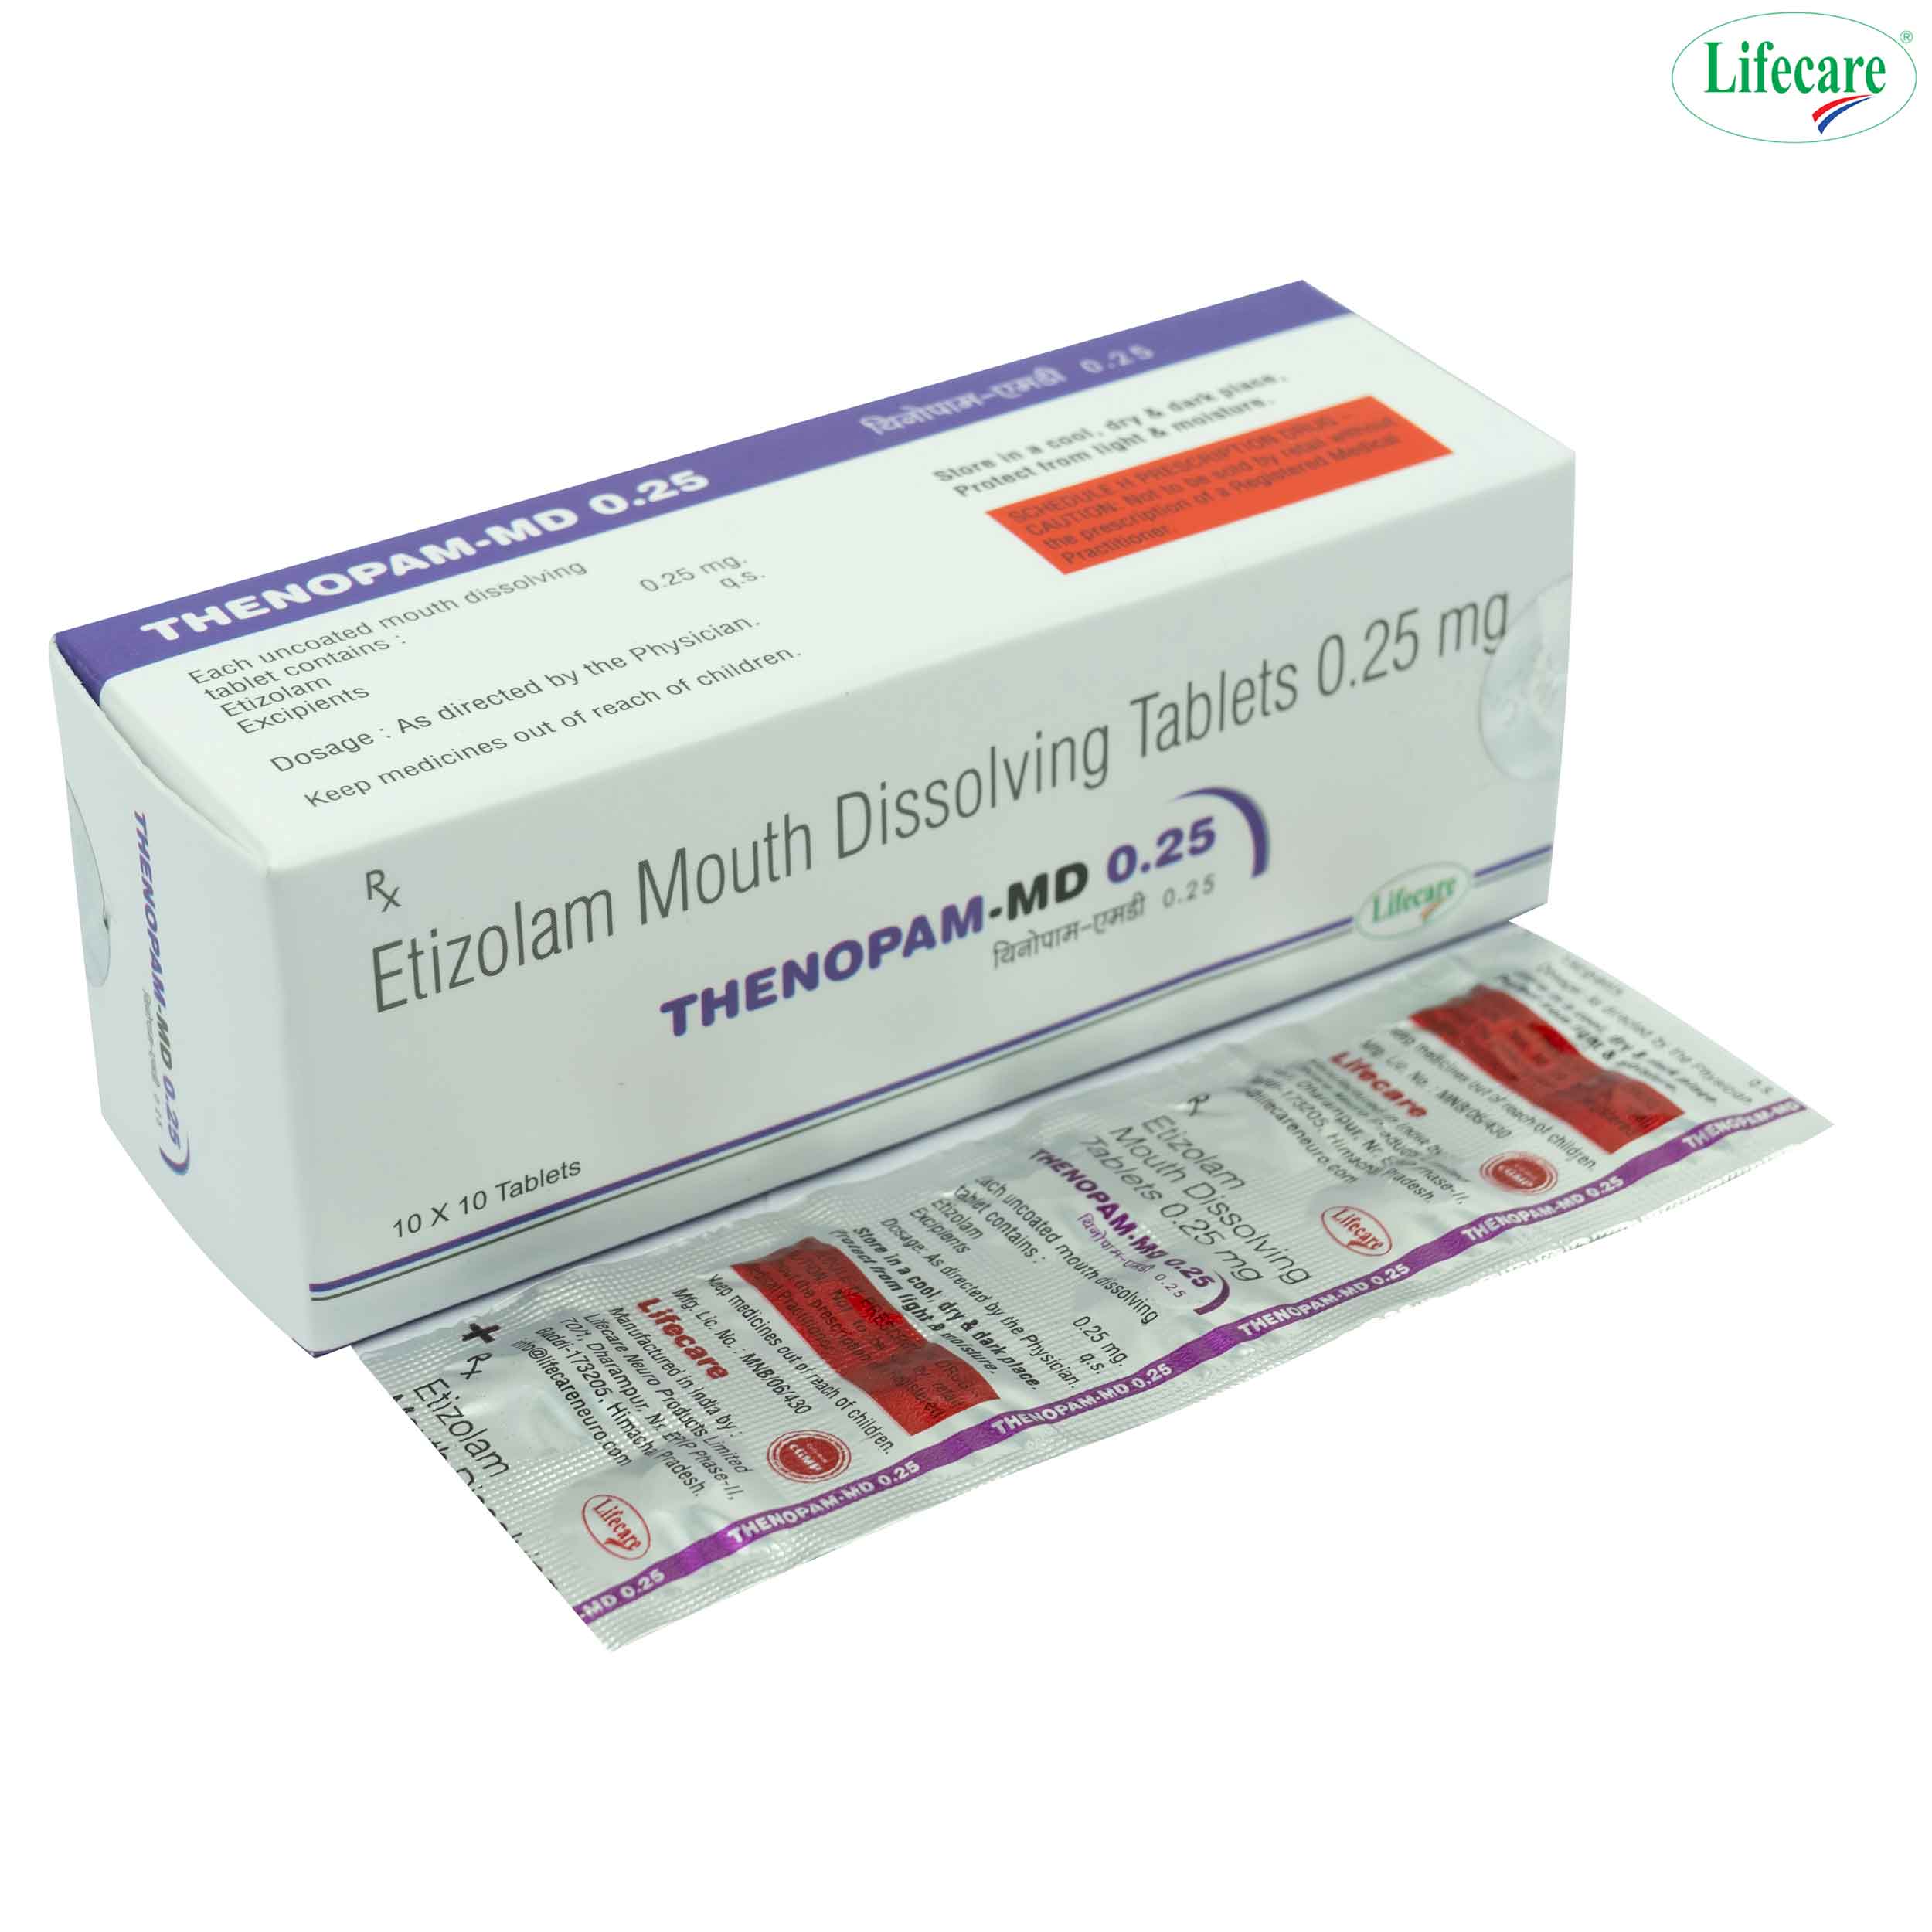 Etizolam Mouth Dissolving Tablets 0.25, 0.5 mg